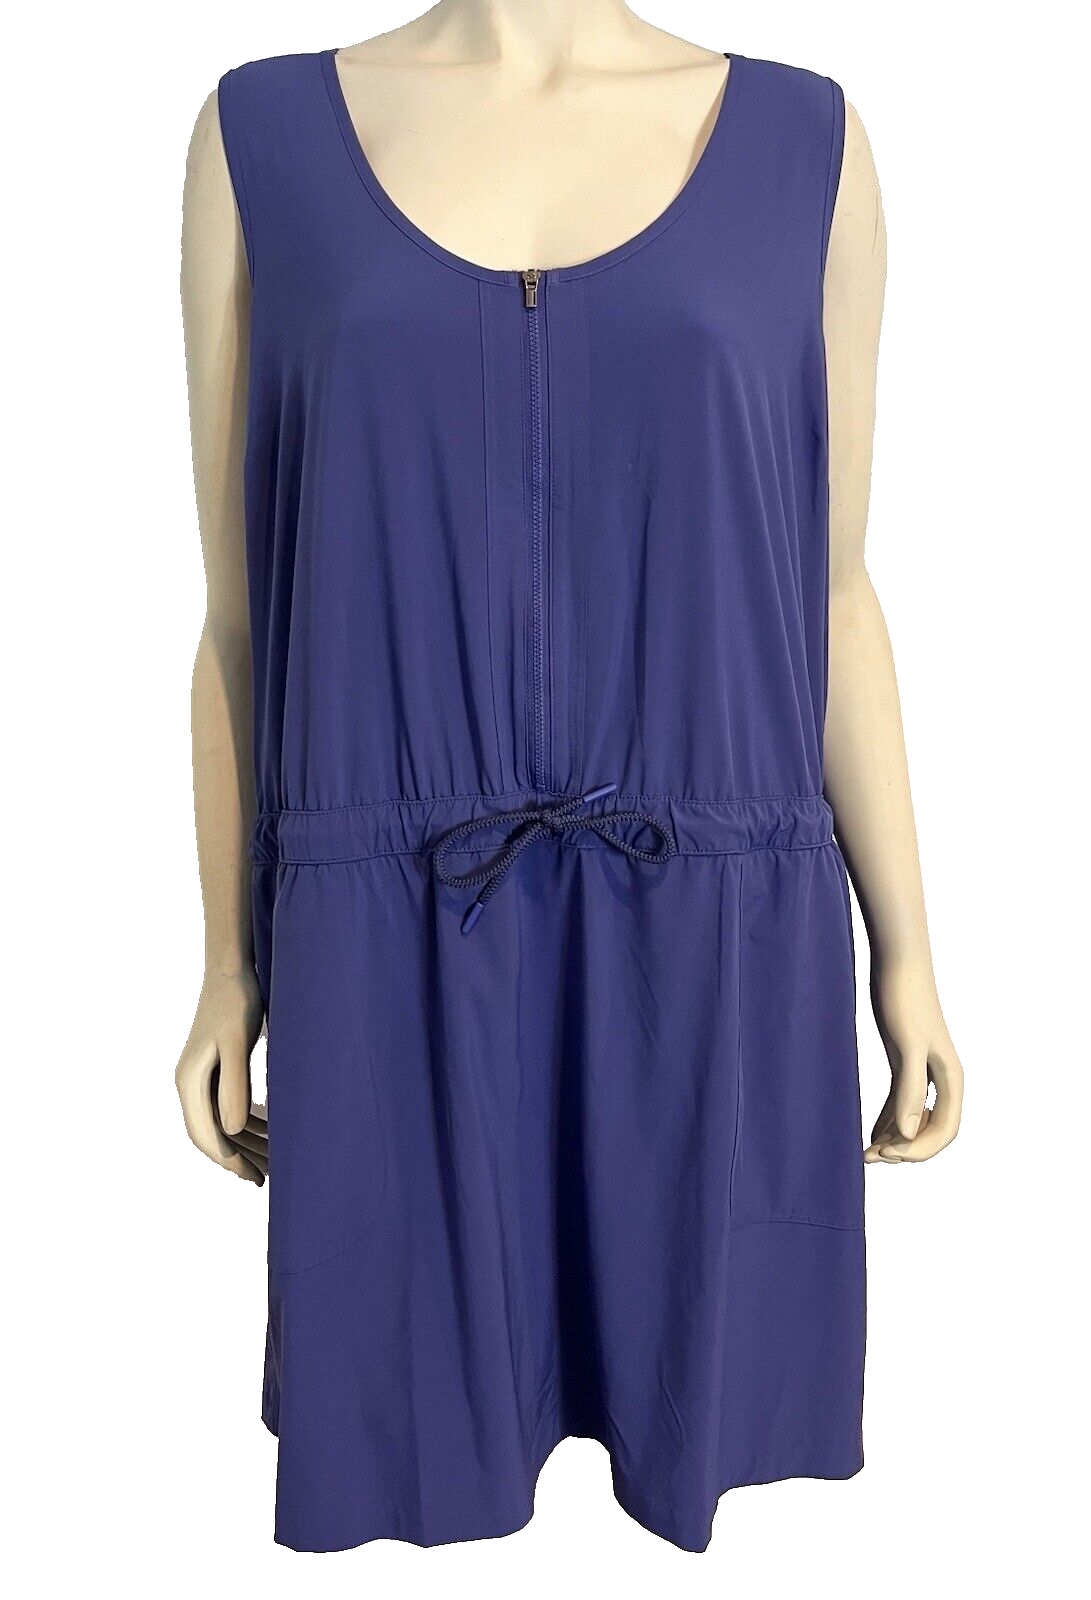 Primary image for Athleta Blue Sleeveless Drawstring Waist Dress with Shorts Size 24